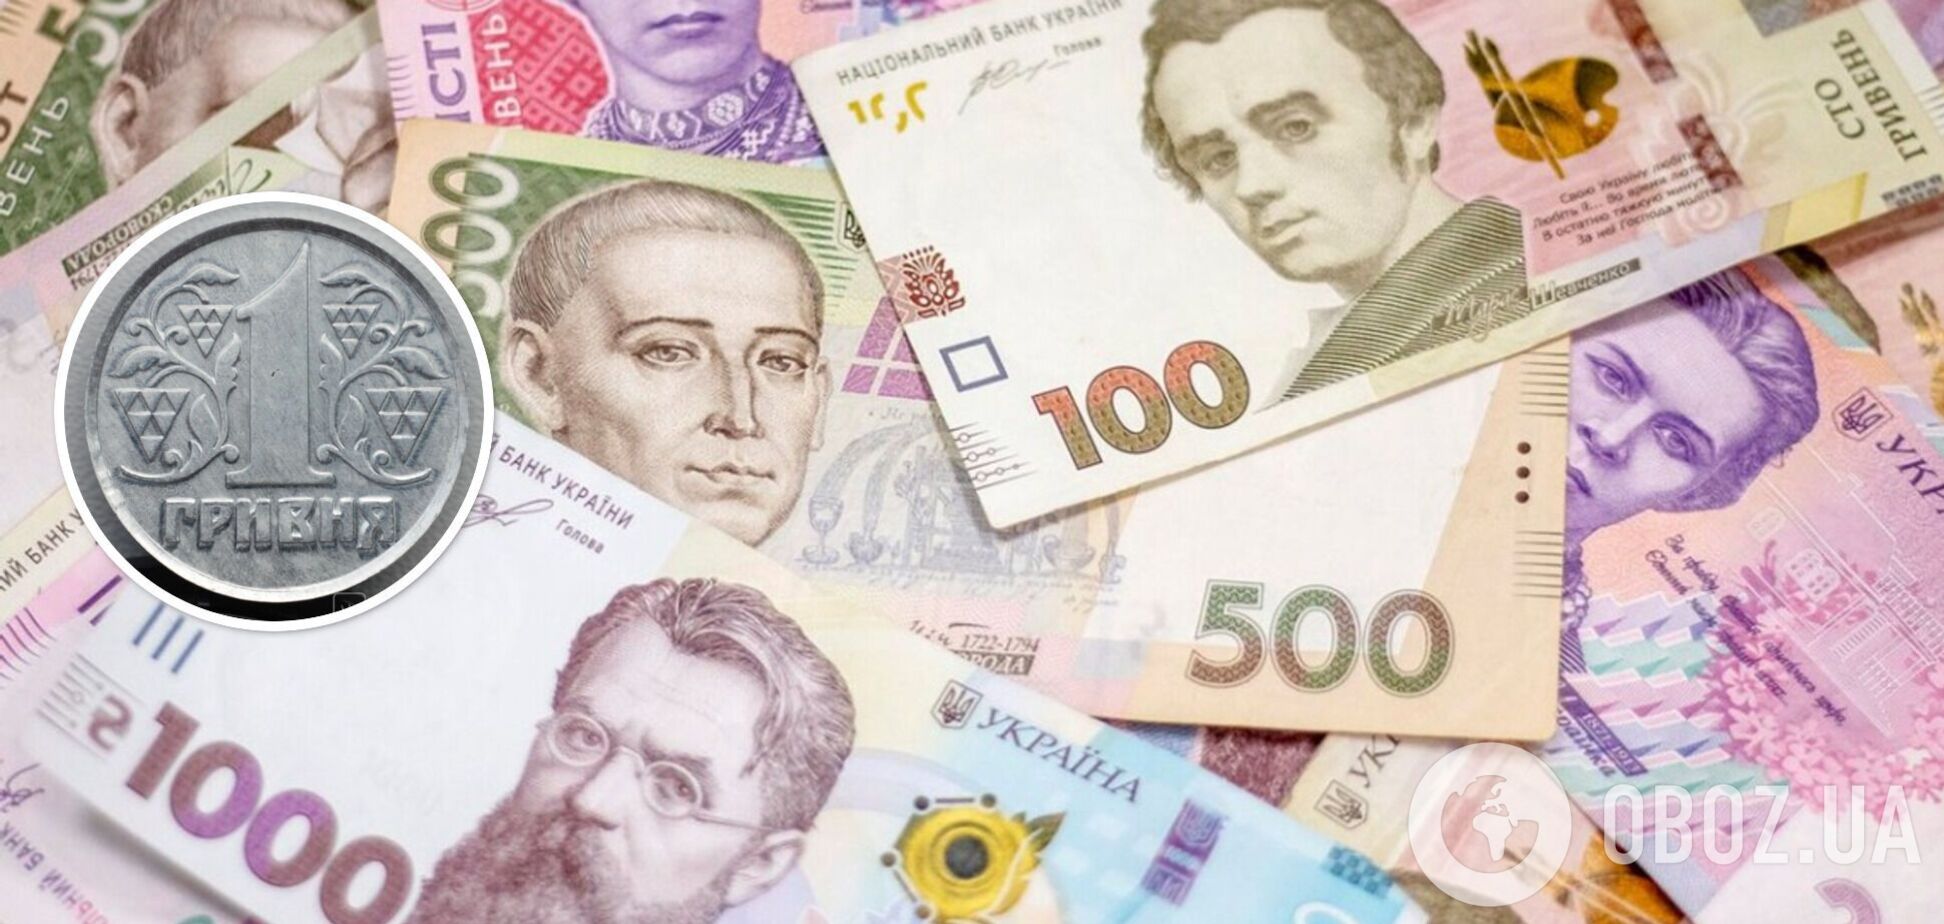 В Украине за 60 тыс. грн продают 1 грн